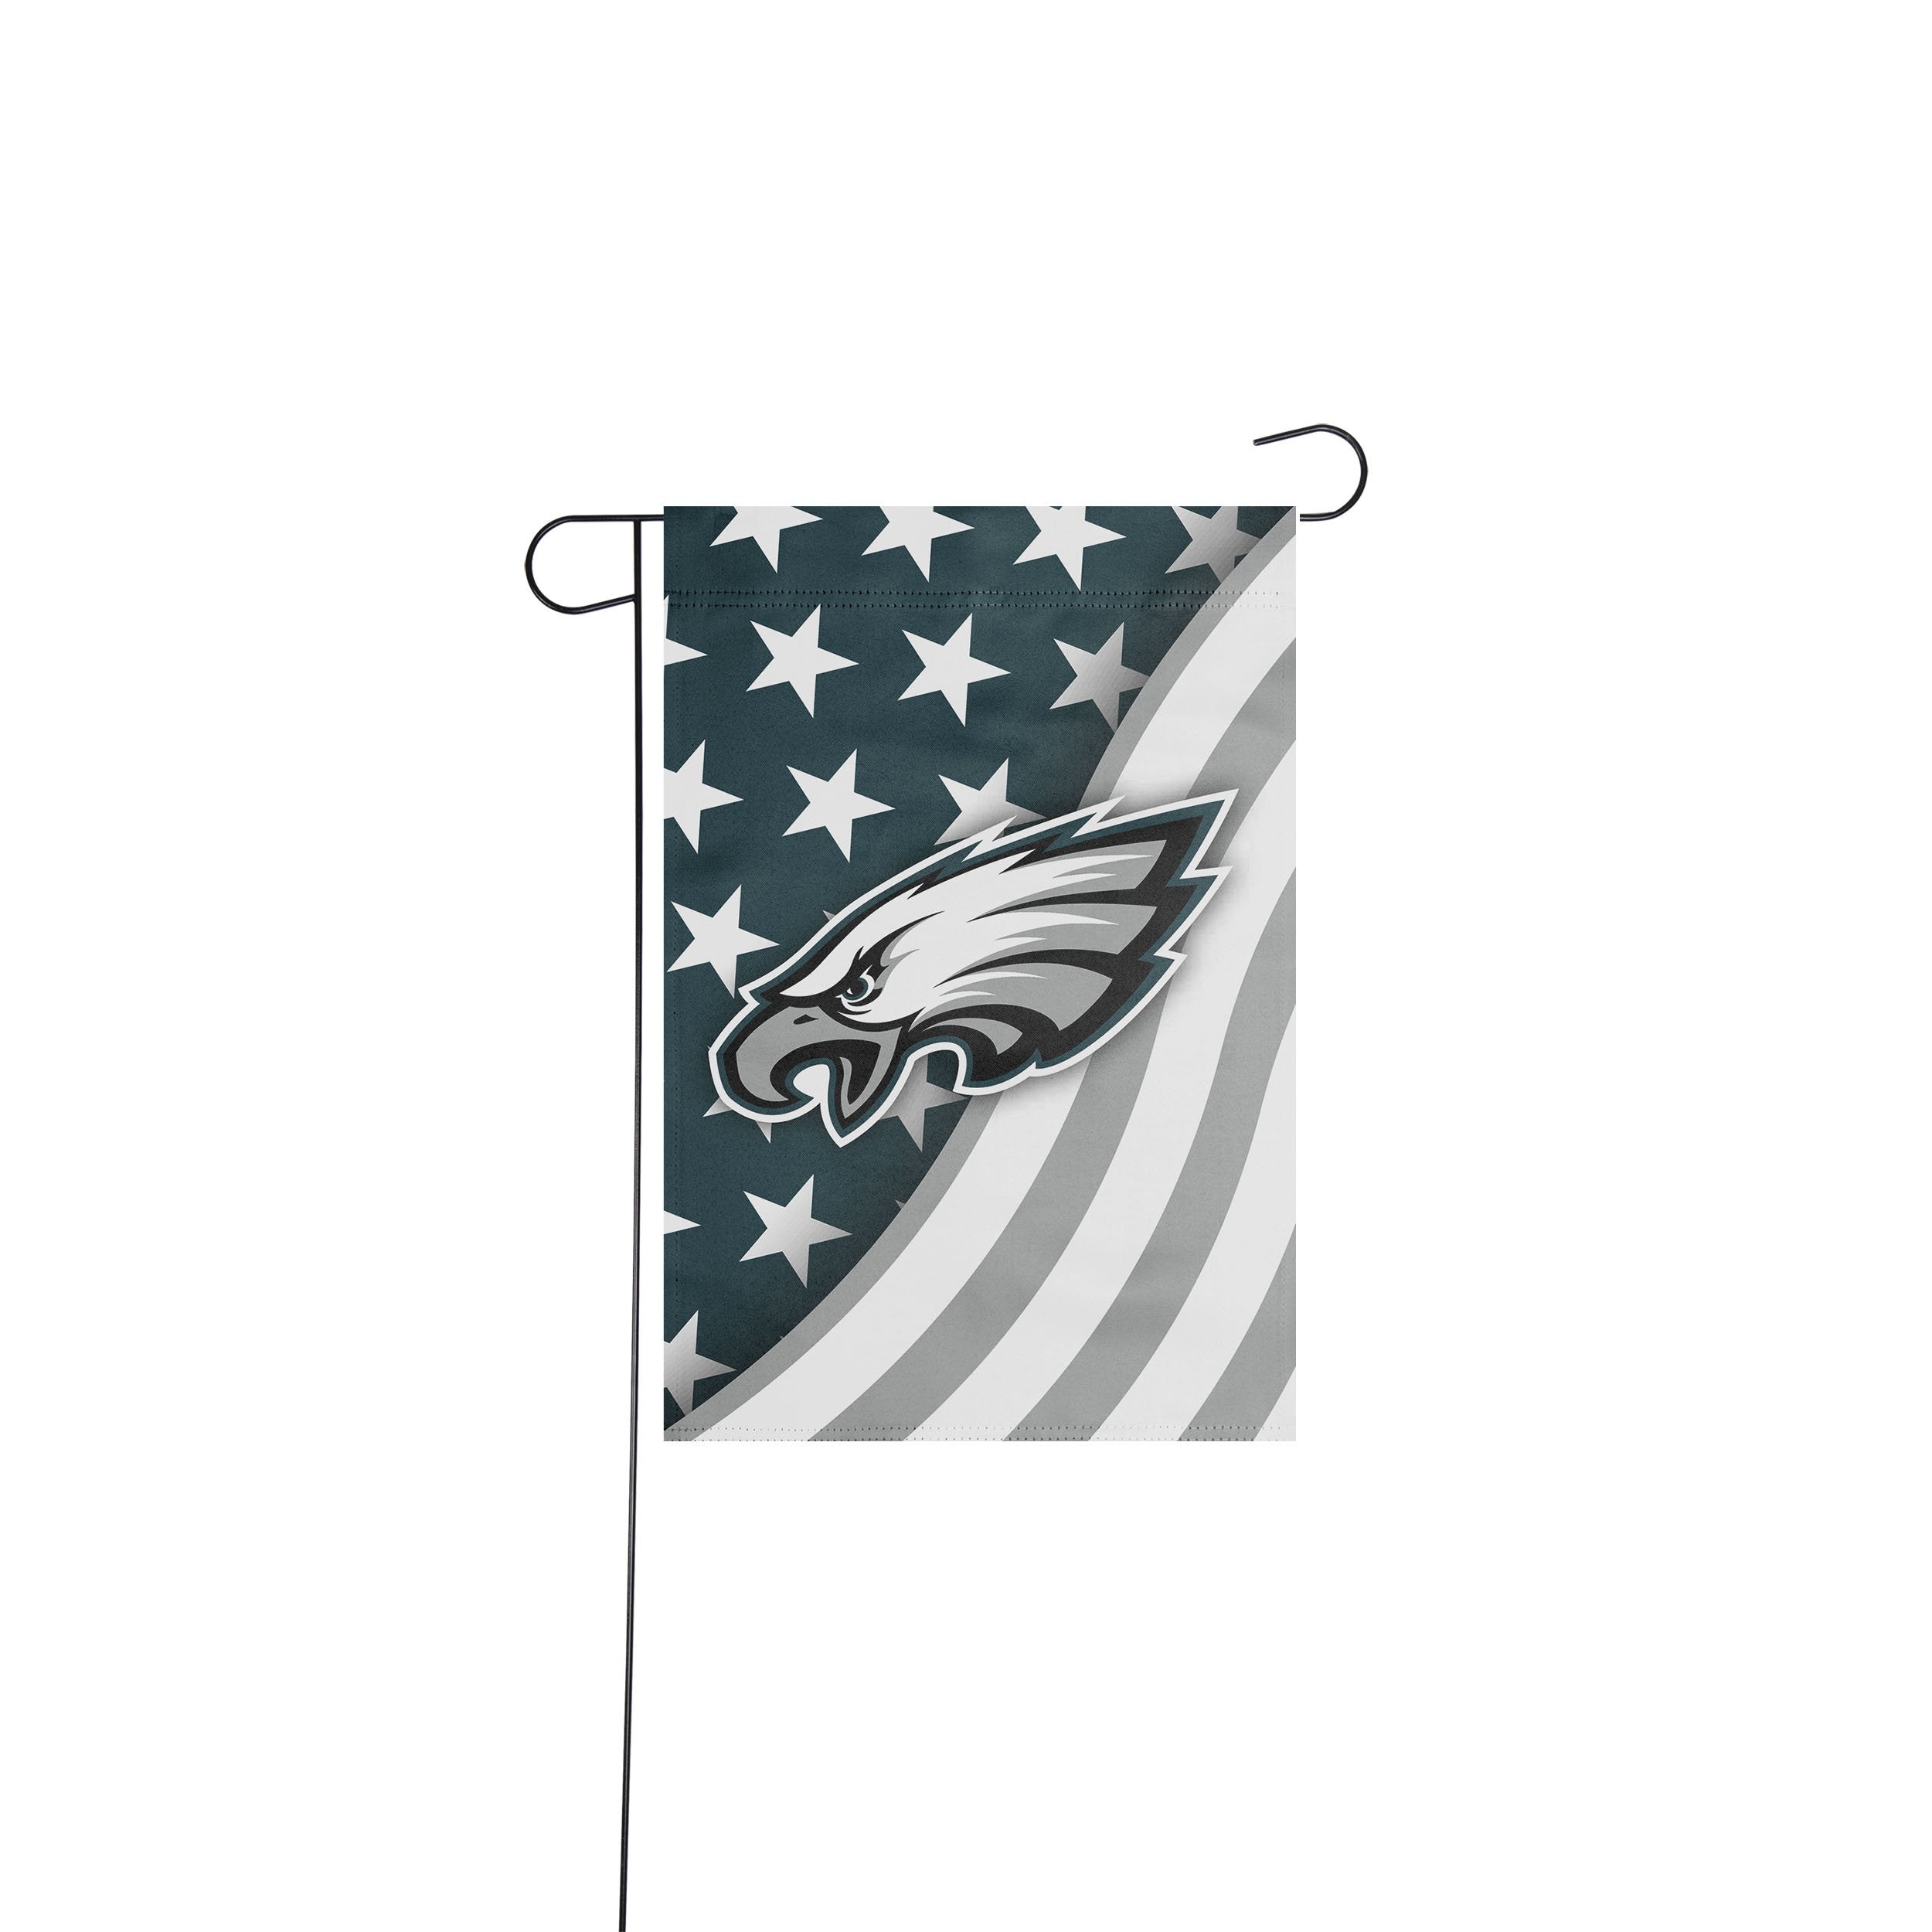 Philadelphia Eagles NFL Licensed Garden Flag